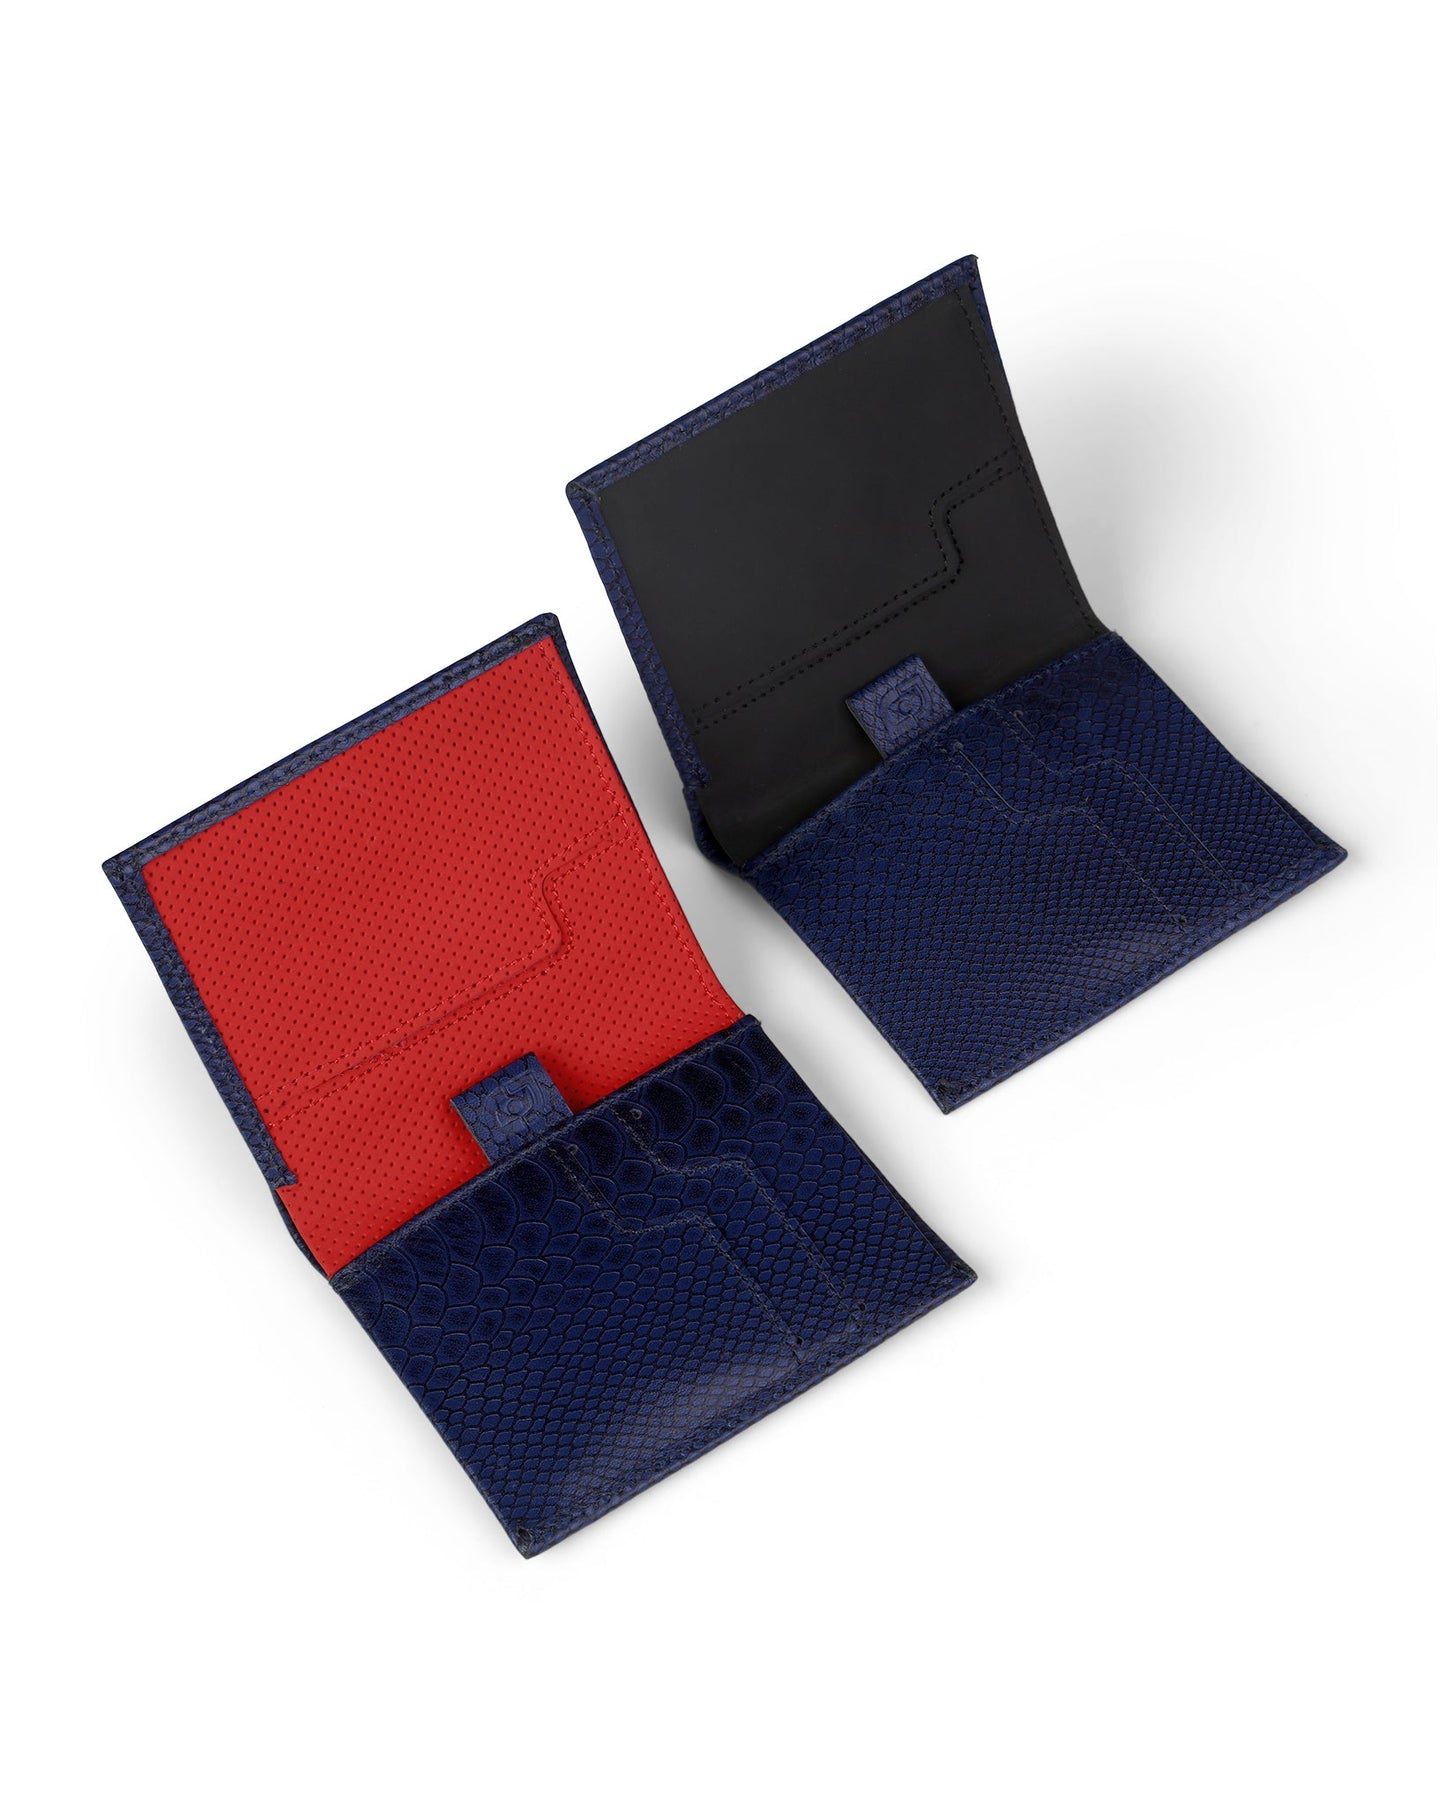 Slim Leather Wallet - Azul Escamas/Negro